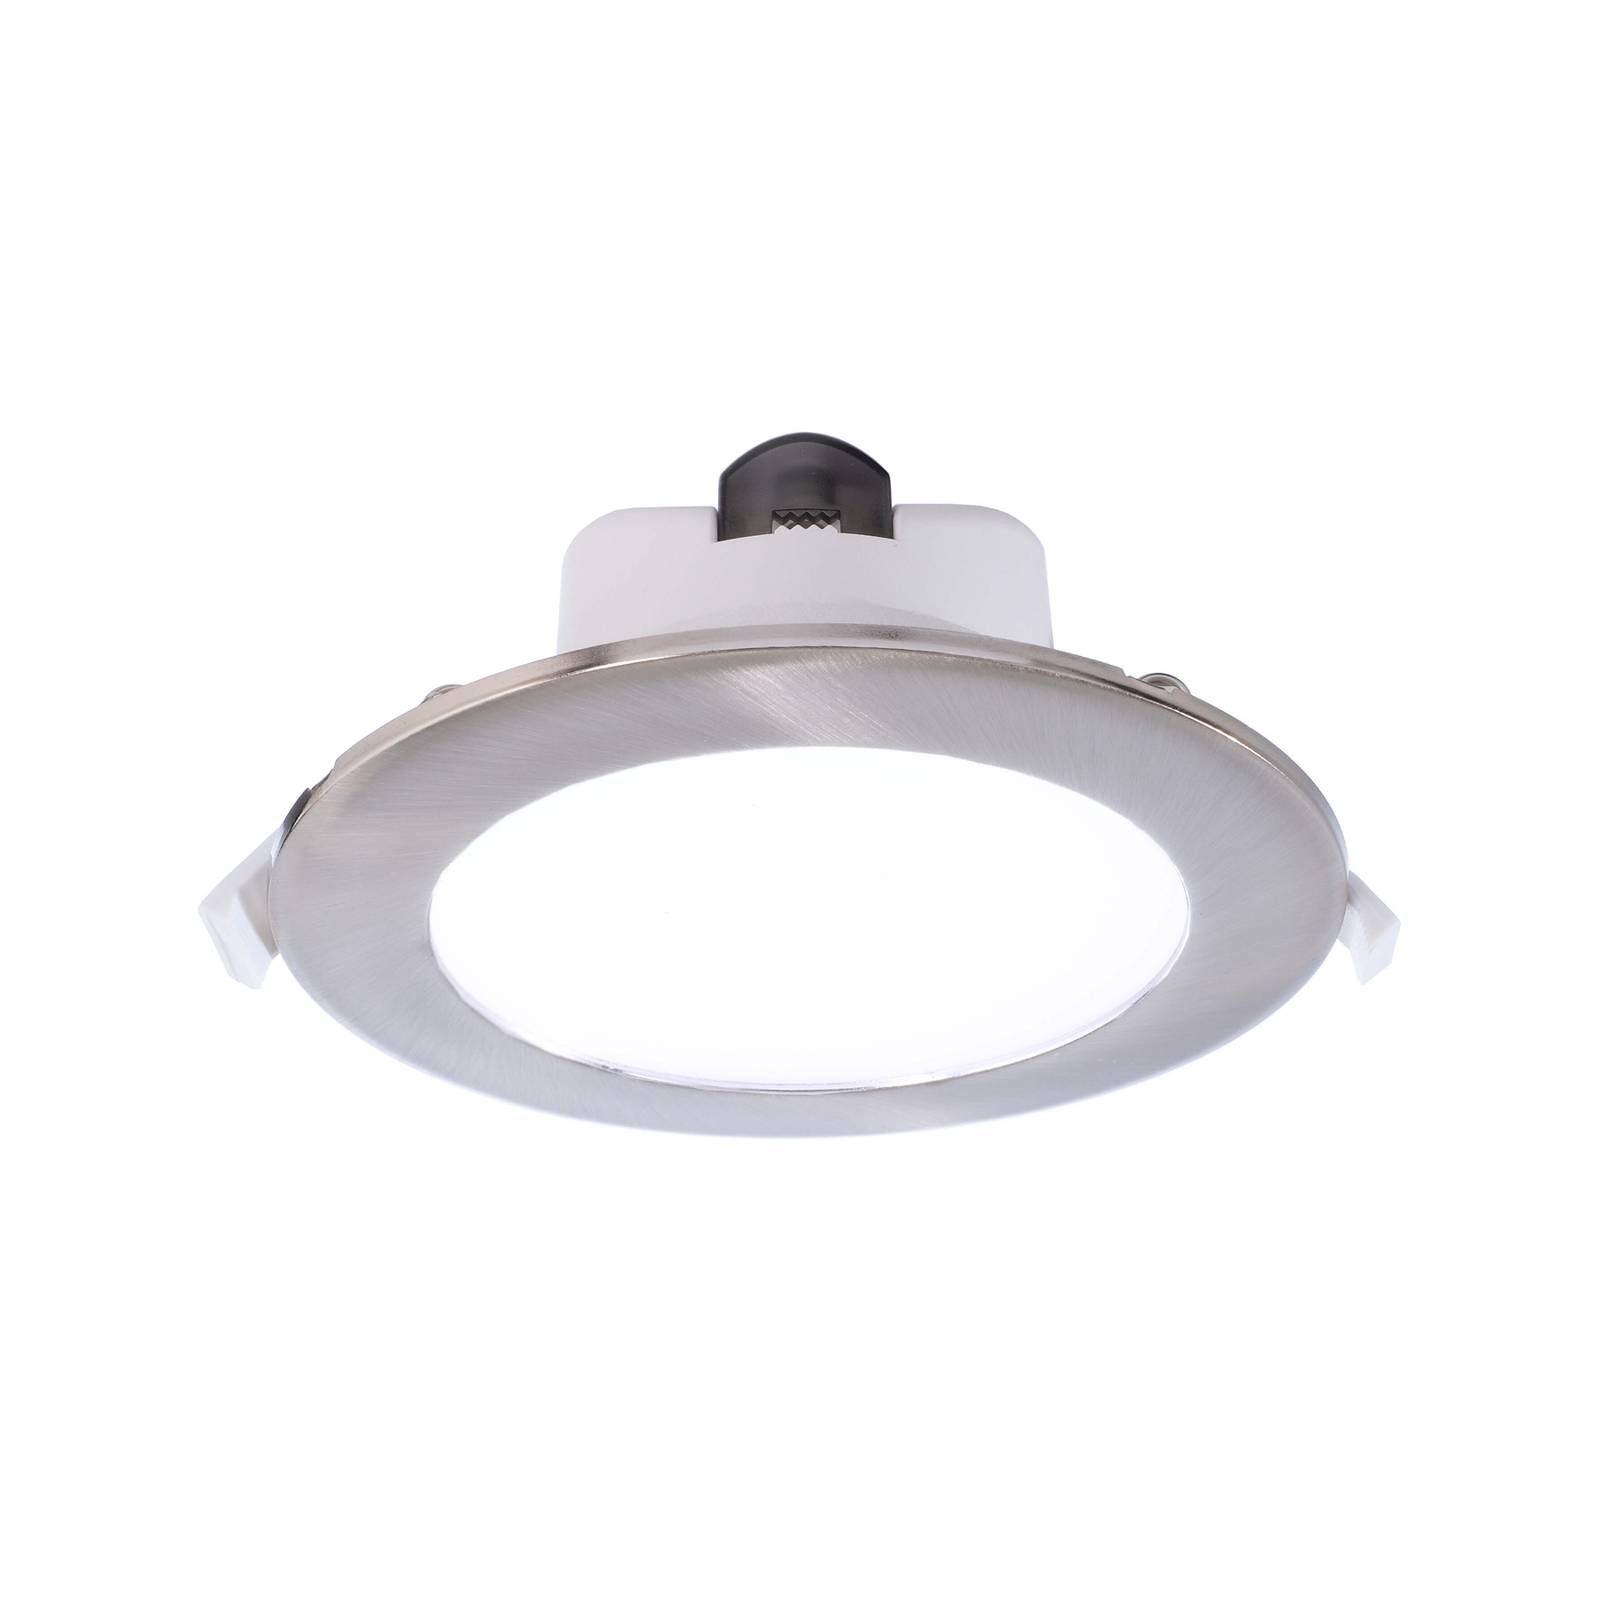 Deko-Light LED-Einbauleuchte Acrux 145, weiß, Ø 17,4 cm